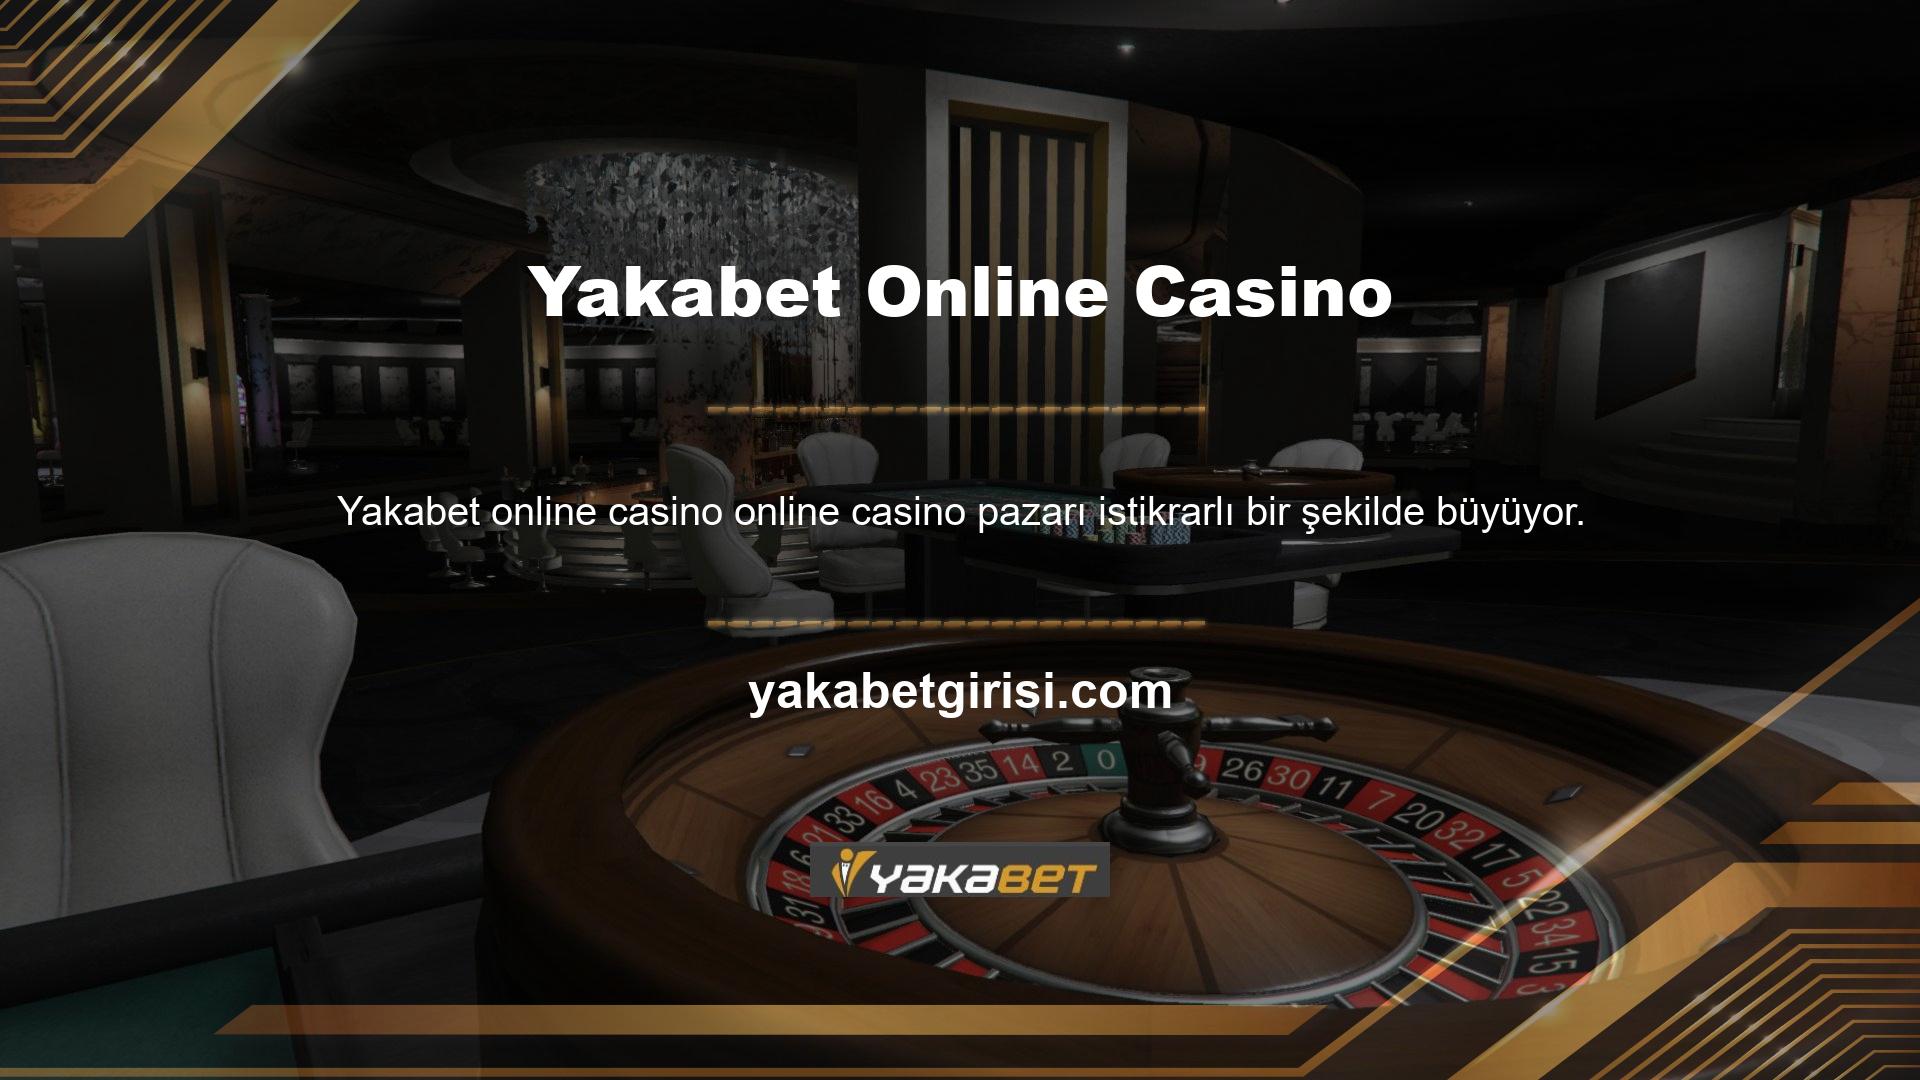 Bu hızlanma, çevrimiçi kanallarda casino teknolojisinin gelişimini yansıtıyor ve en önemli casino oyun istasyonlarından biri olan Kıbrıs'ı özellikle etkiliyor